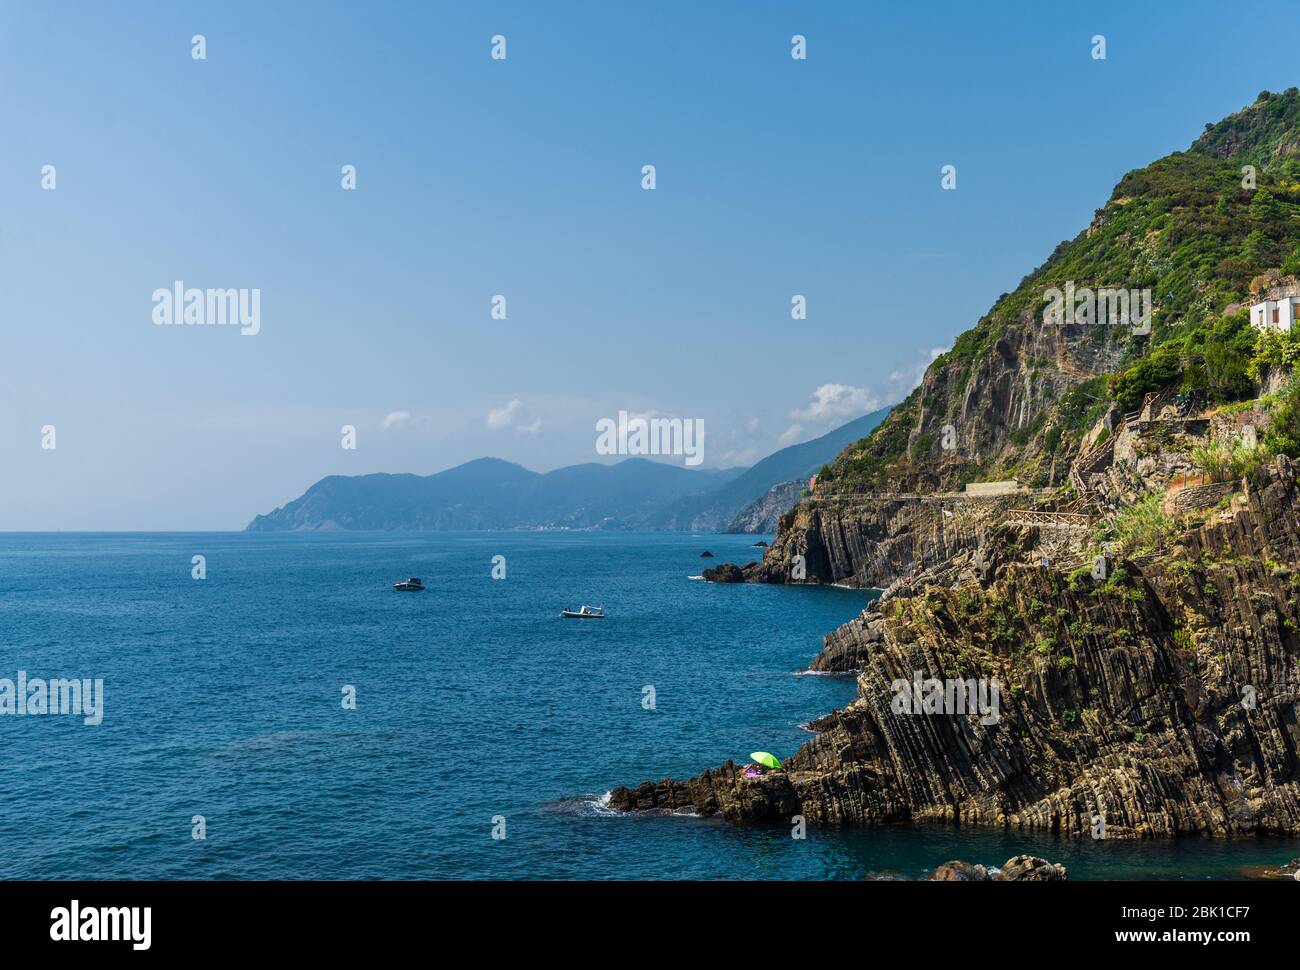 Vista sul litorale ligure in Liguria, con acqua acquamarina. Foto Stock